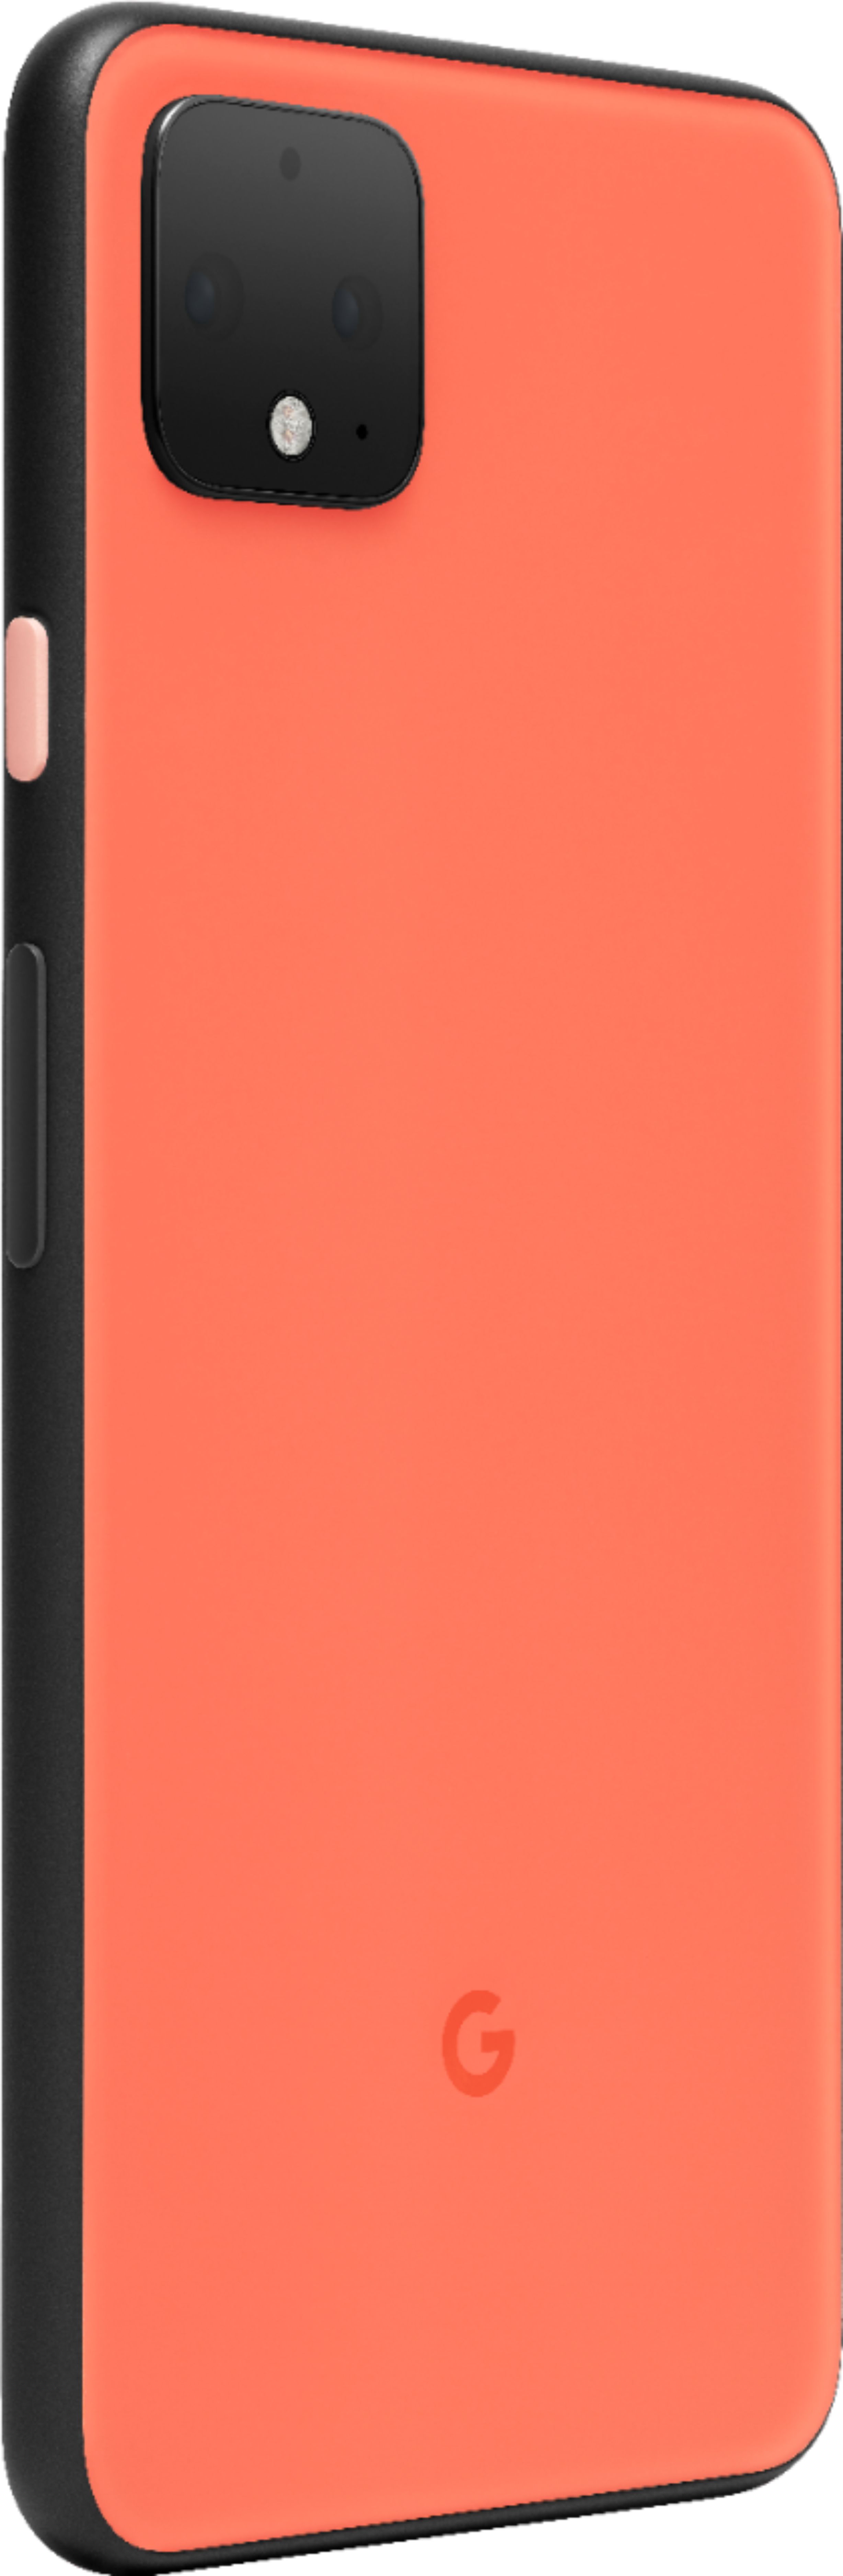 公式ストア Google Pixel 4XL Oh so Orange 64GB スマートフォン本体